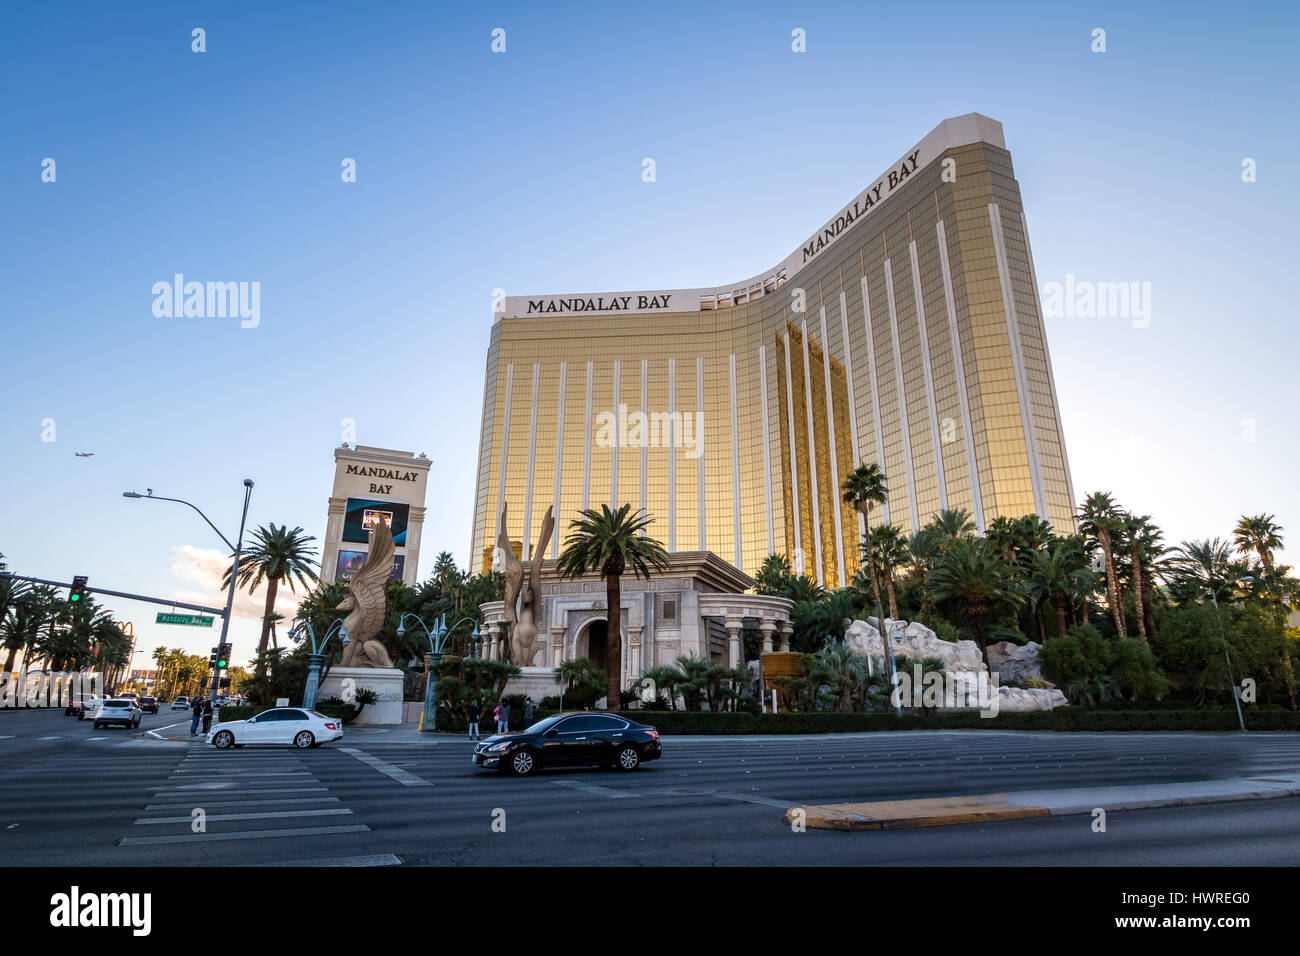 Mandalay Bay Hotel and Casino - Las Vegas, Nevada, USA Banque D'Images